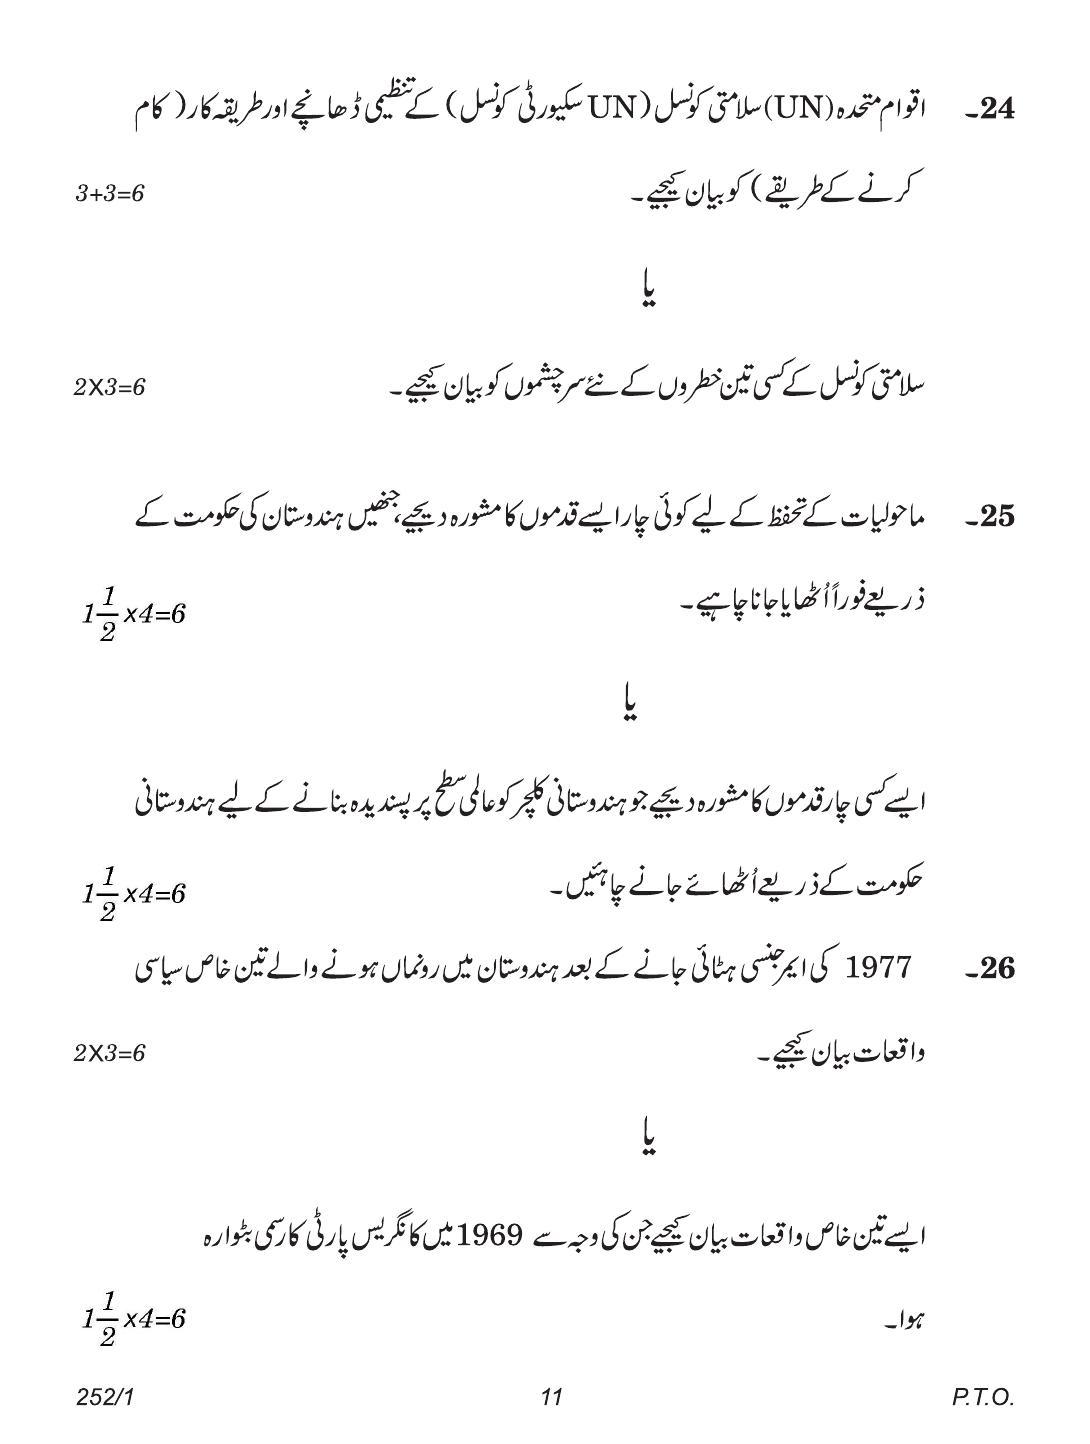 CBSE Class 12 252-1 (Political Science Urdu) 2018 Question Paper - Page 11